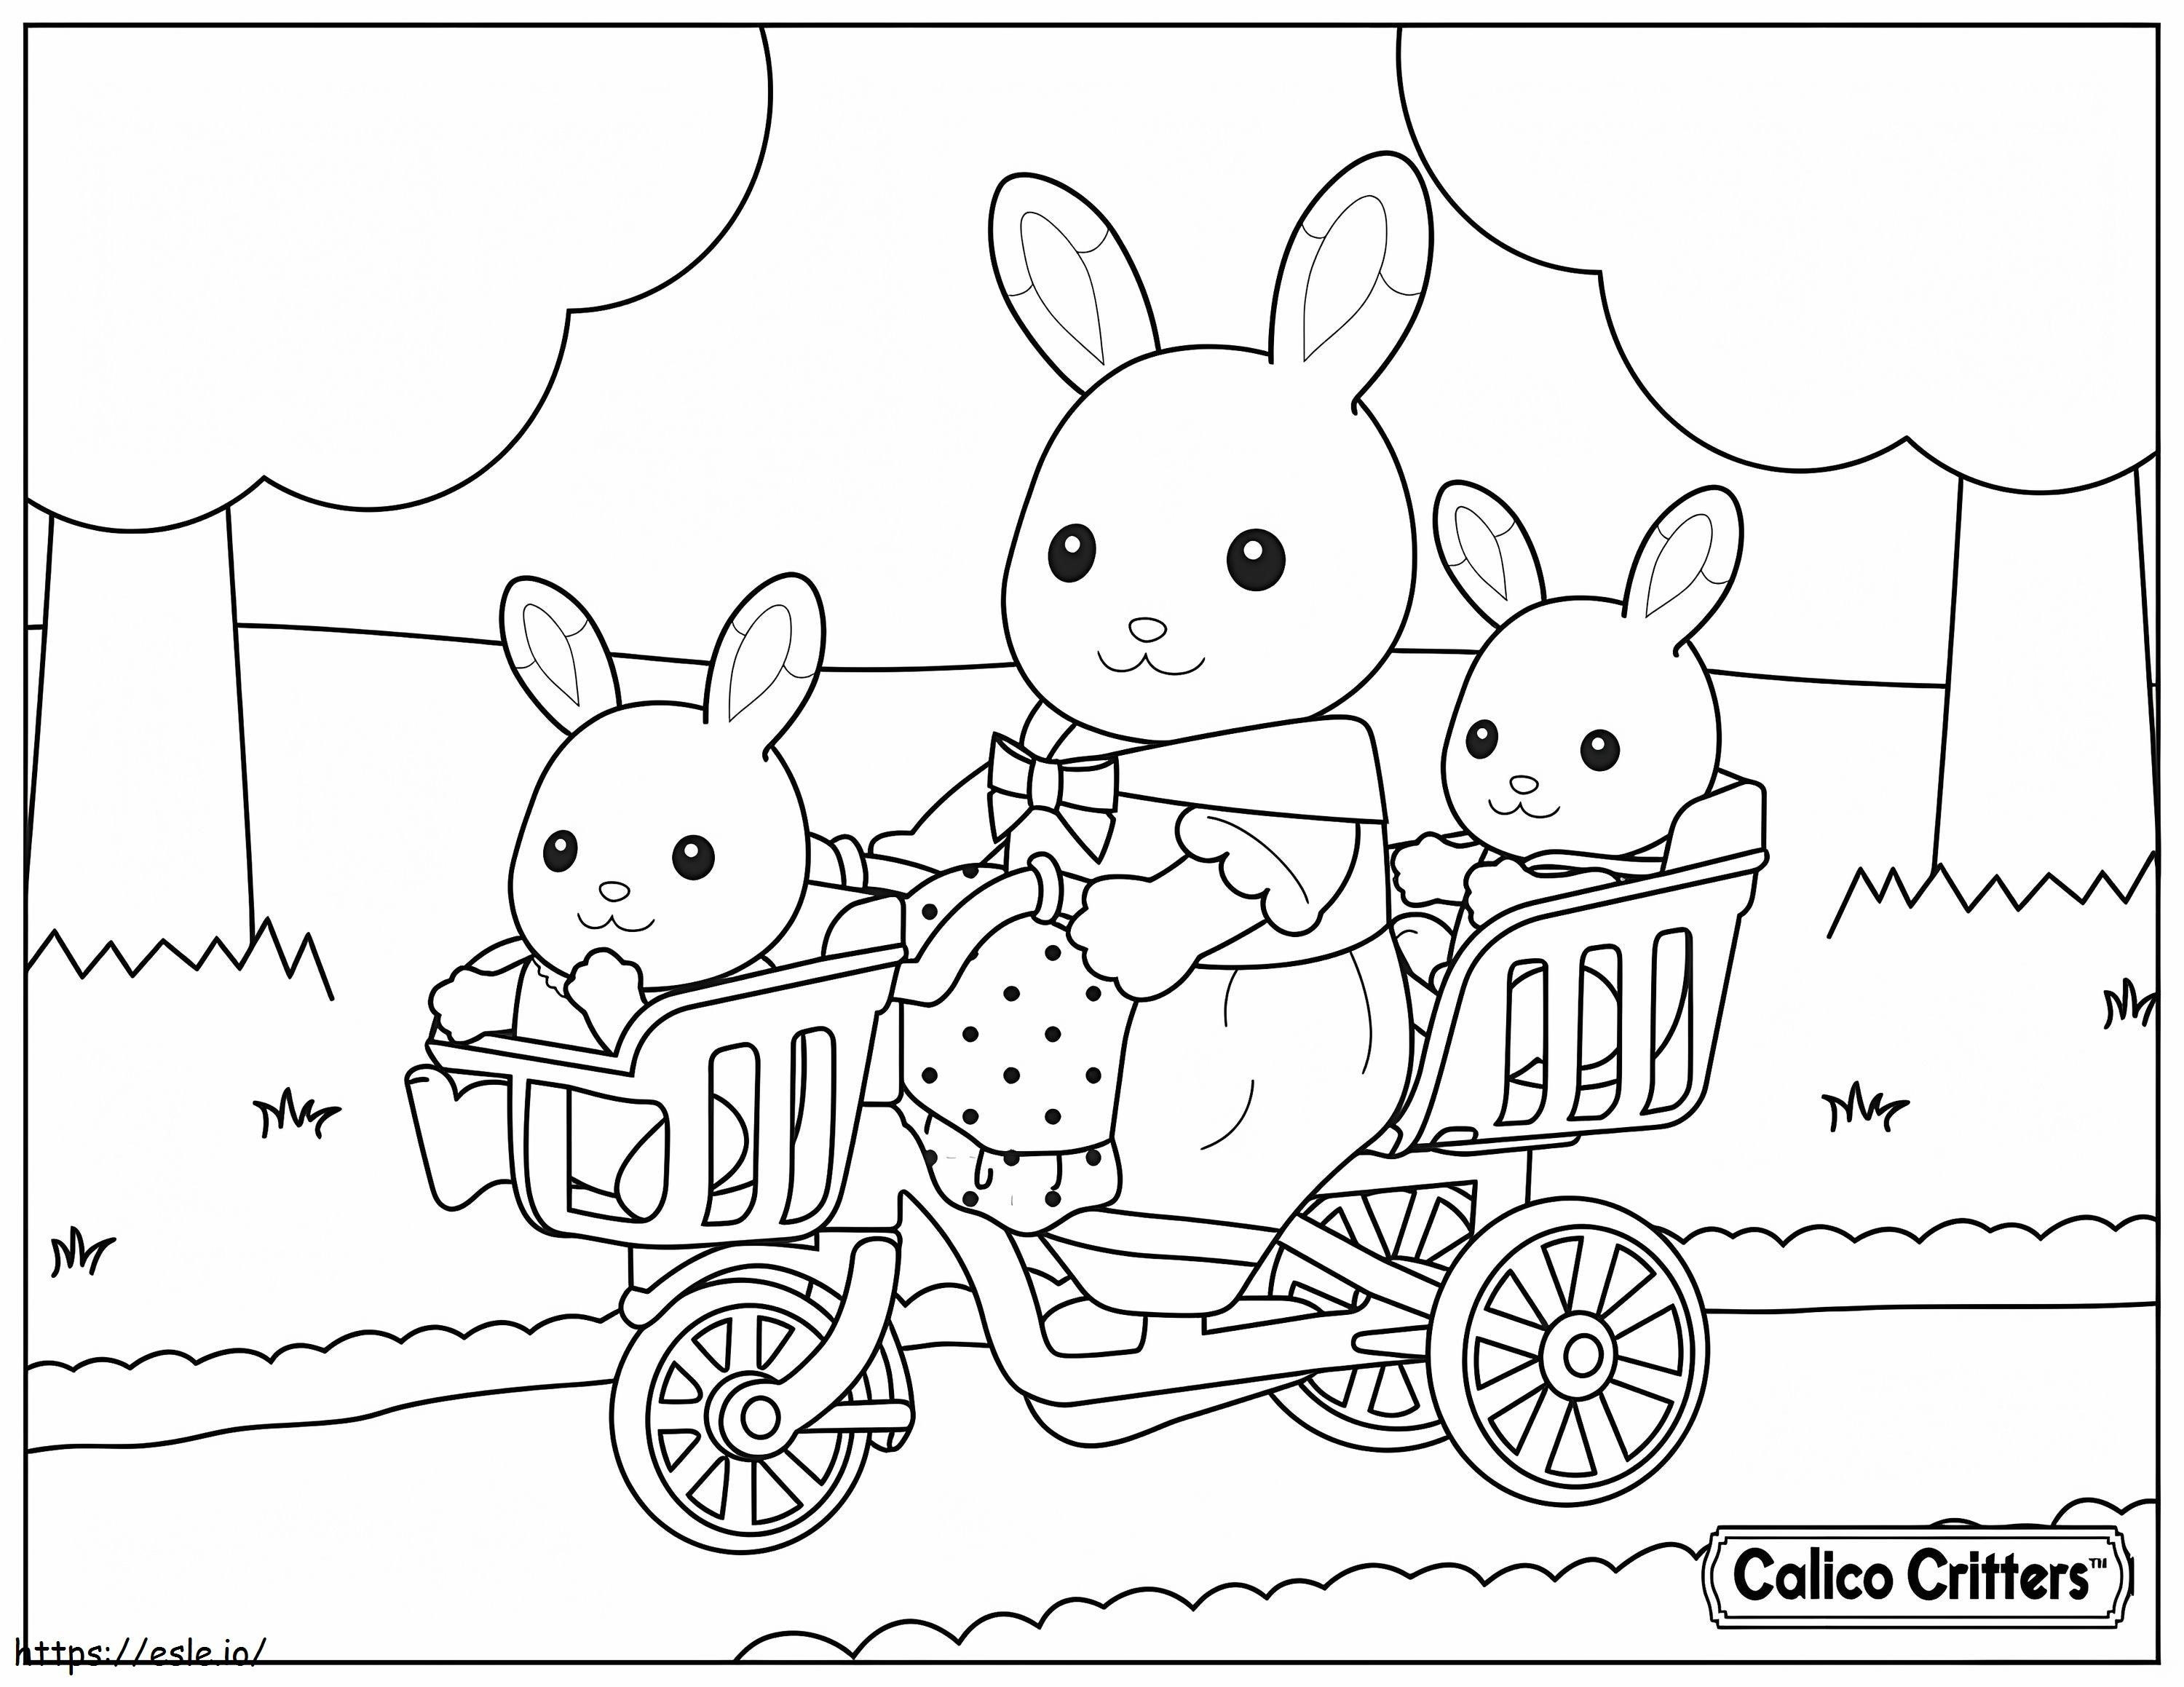  1515174989Bicicleta Calico Critters Con Bebes para colorear